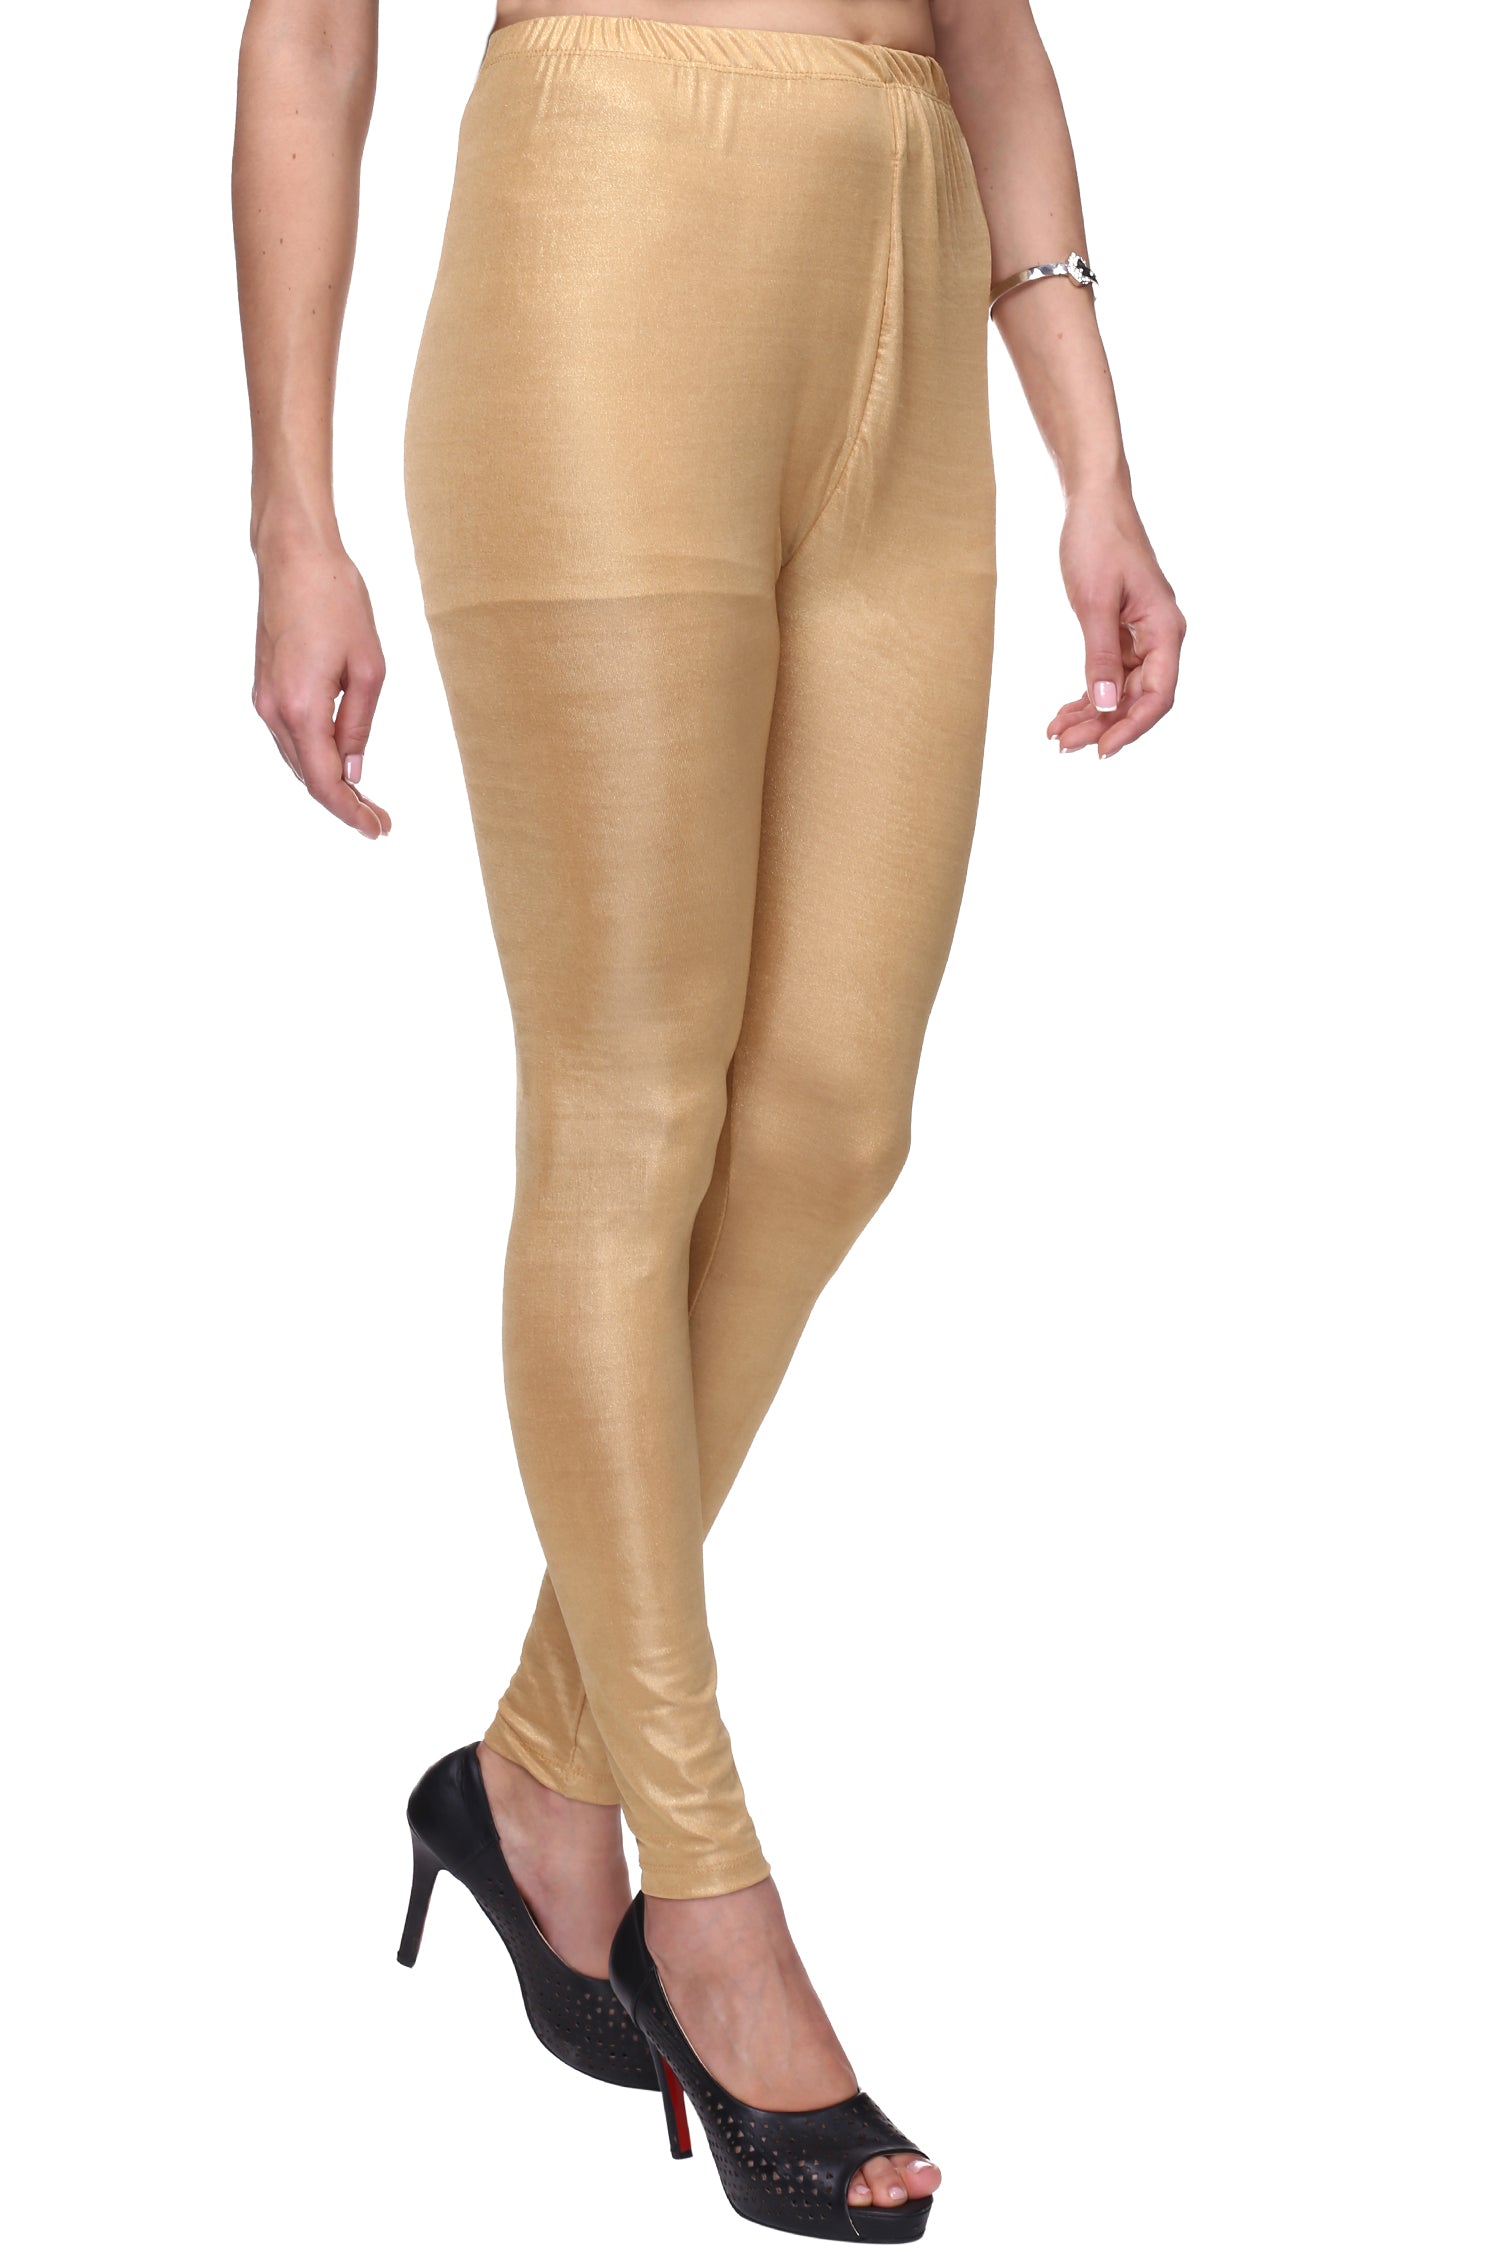 Buy Vastraa Fusion Golden/Shimmer leggings ankle length for women/Girls